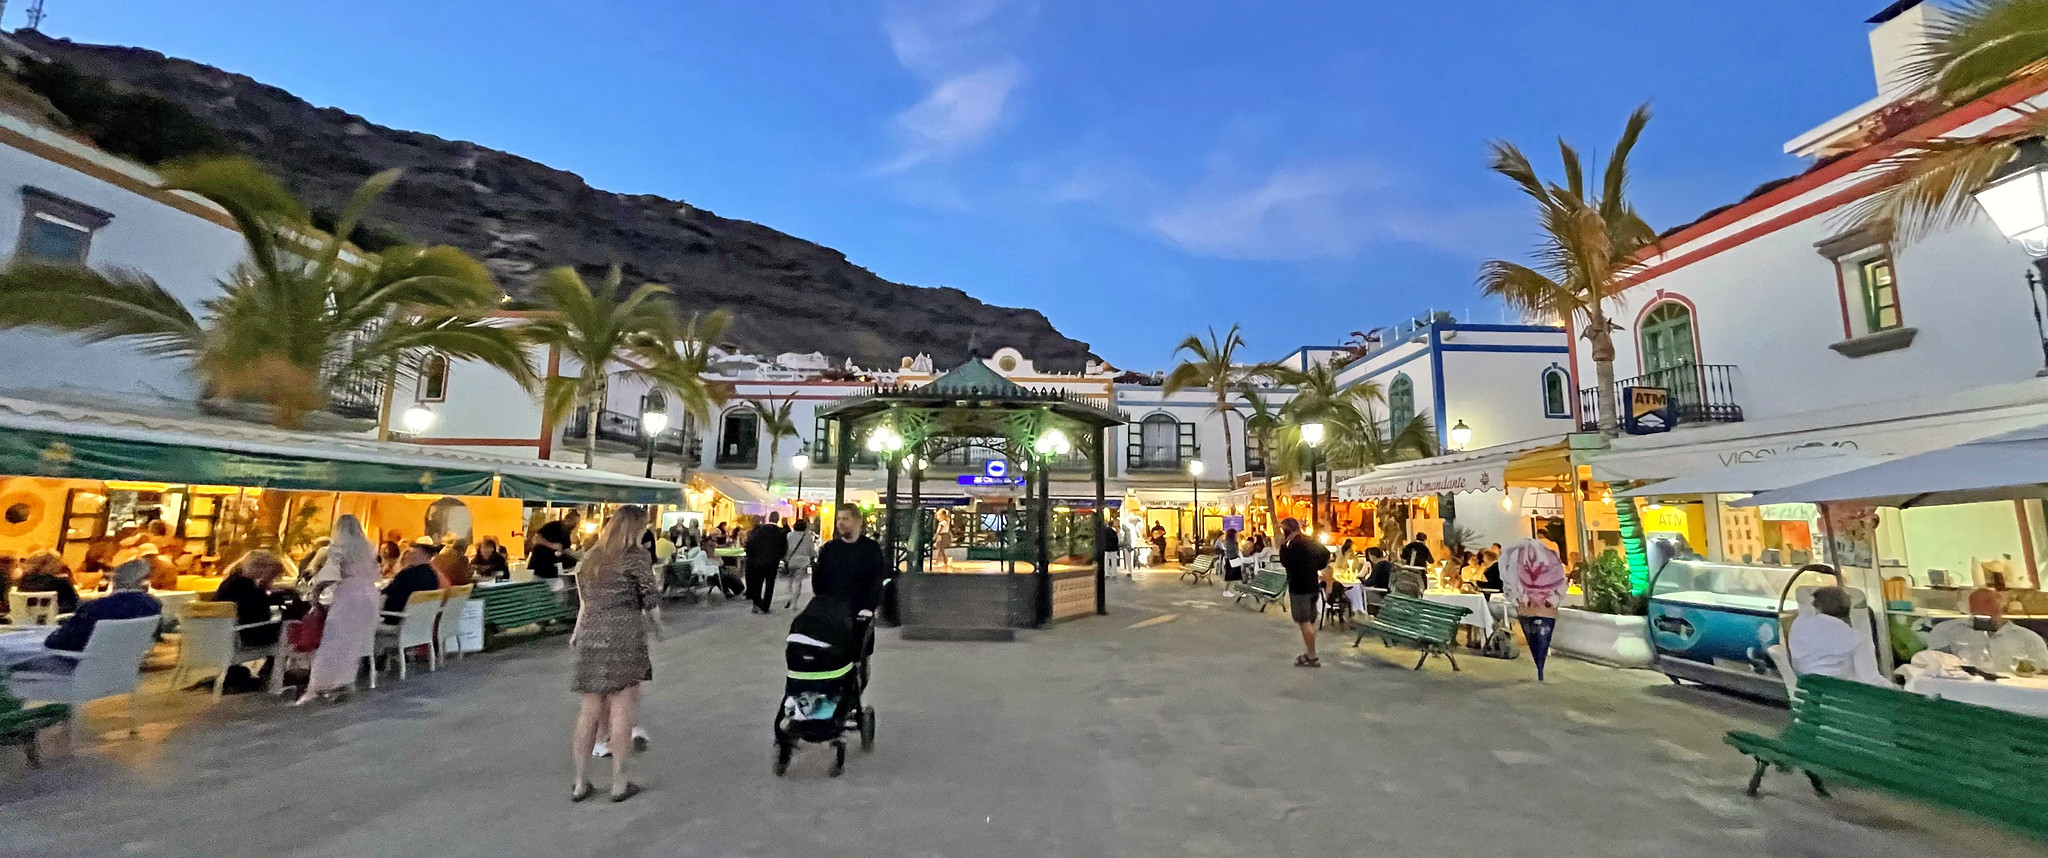 Qué ver en Puerto de Mogán, la Venecia de Canarias - Gran Canaria - Thewotme